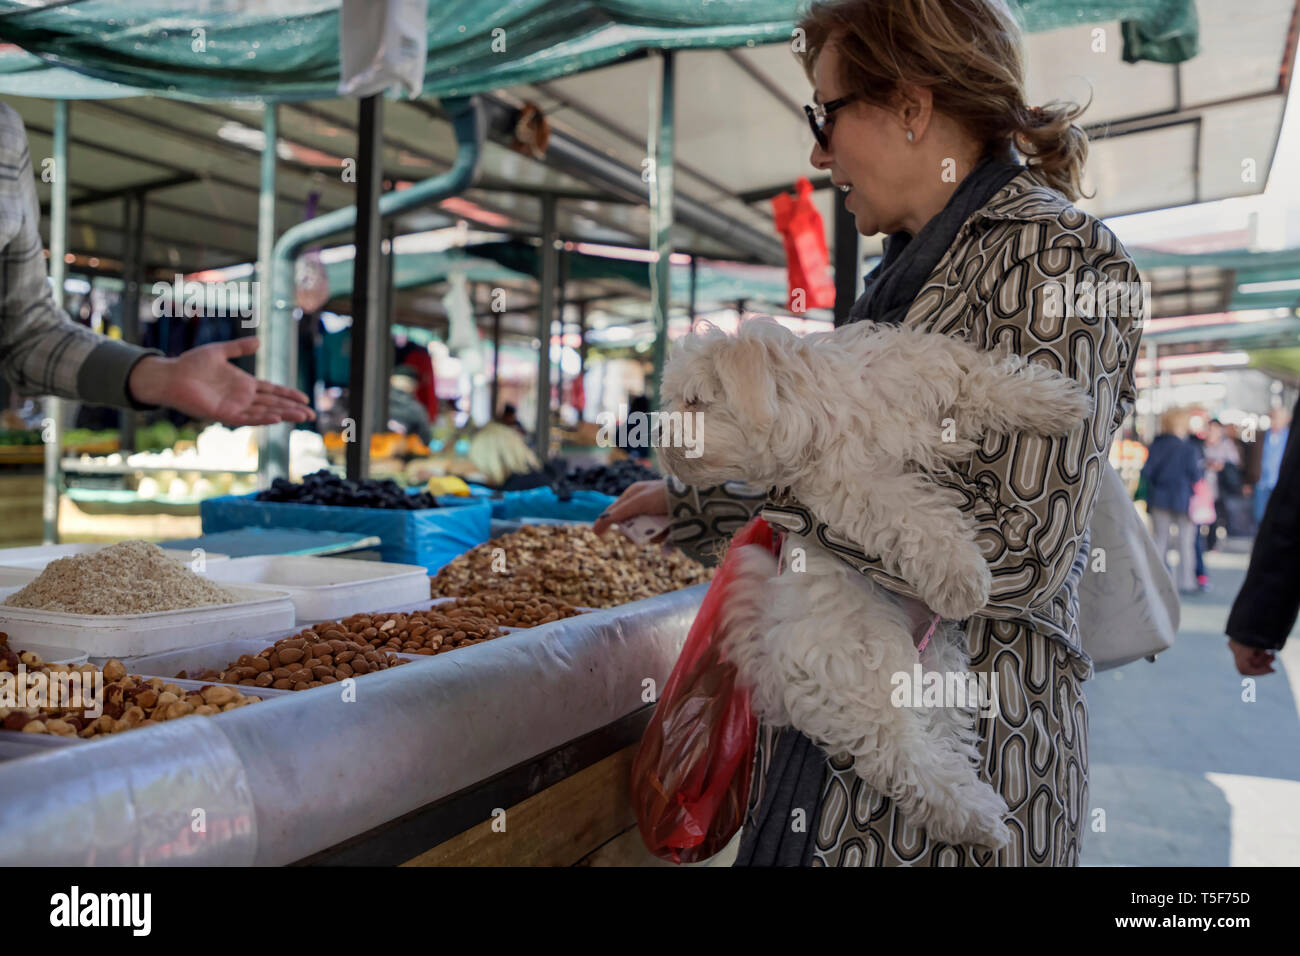 Zemun, Serbie, 19 avril 2019 : marché vert scène avec vendeur vente de noix & fruits séchés et lady tenant dans ses bras un petit chien Banque D'Images